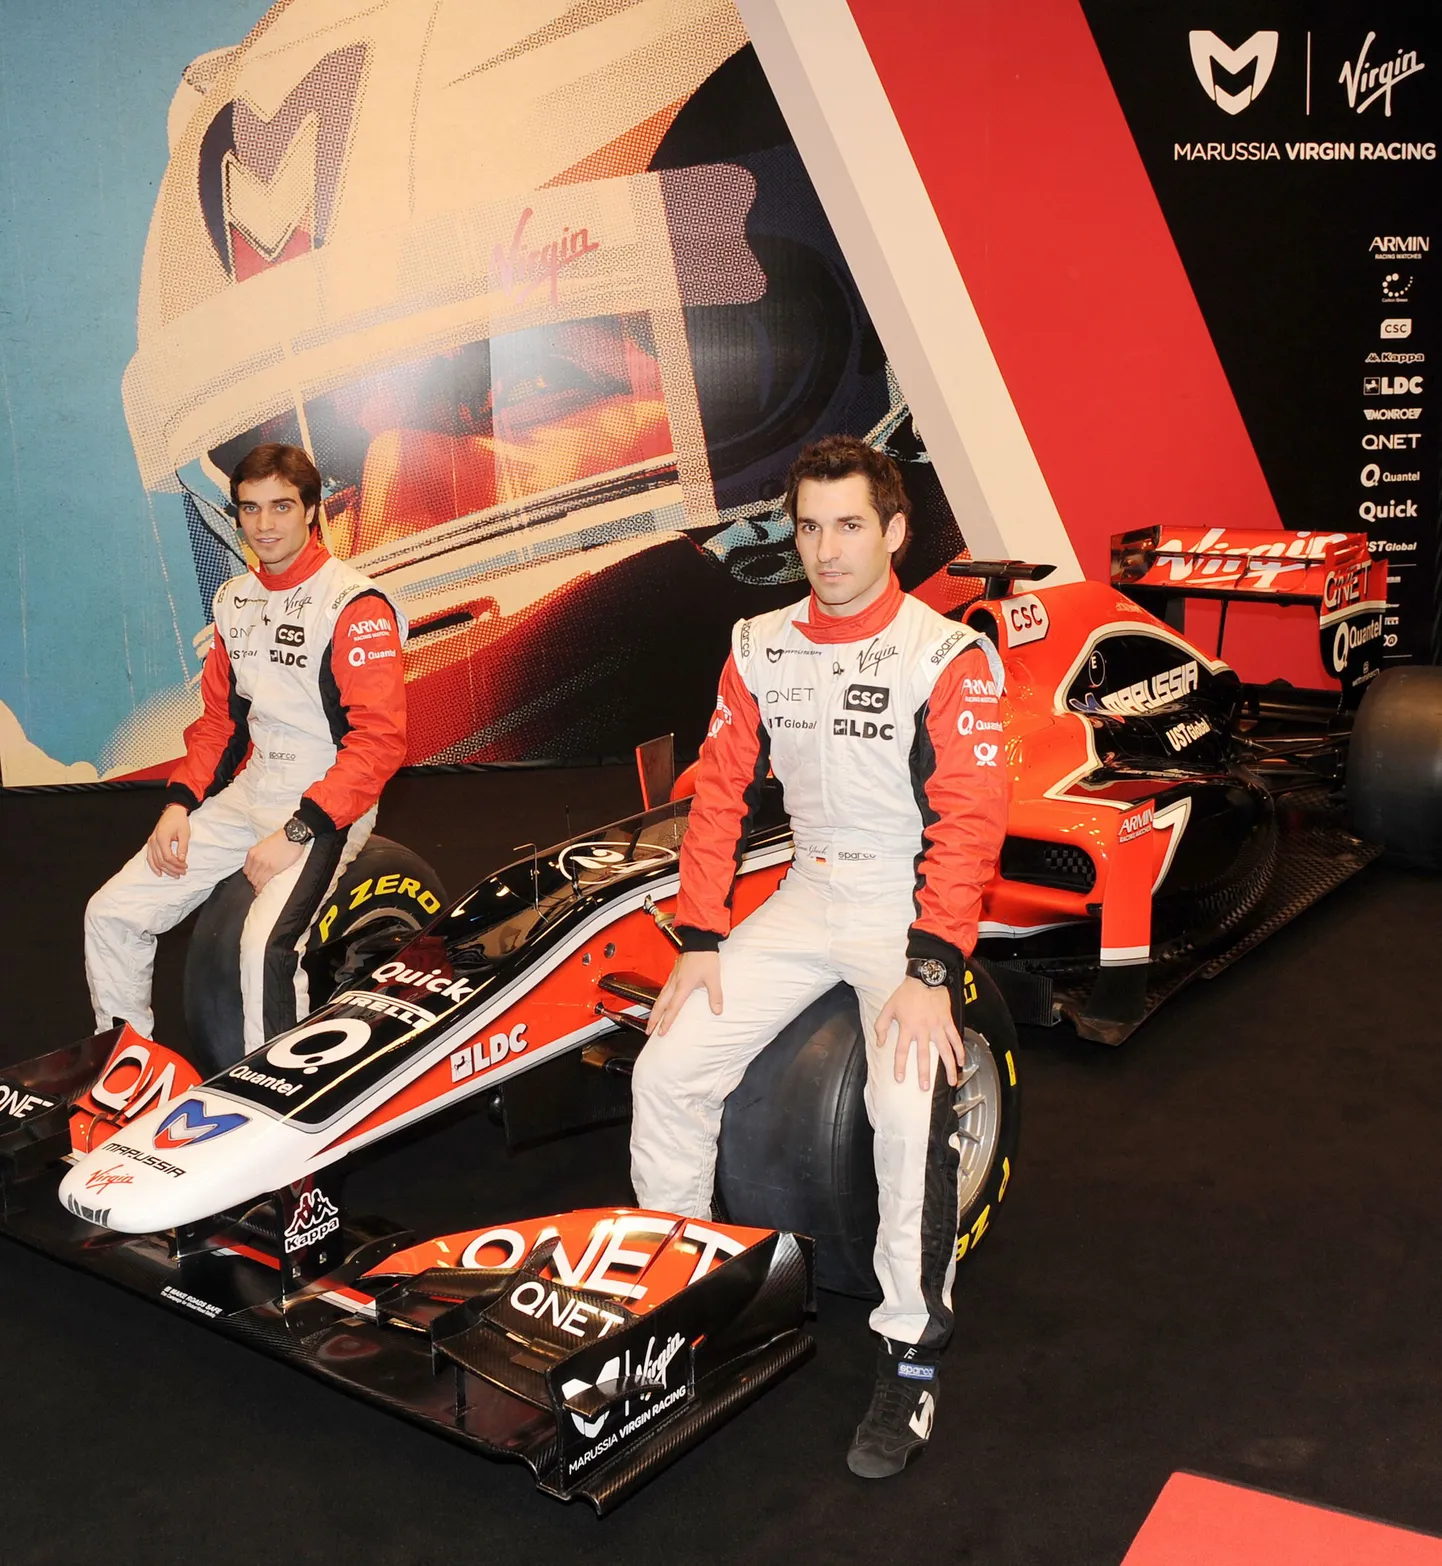 Презентация болида команды Marussia Virgin. Пилотами в этом году будут бельгиец Жером Д'Амброзио (слева) и немец Тимо Глок.